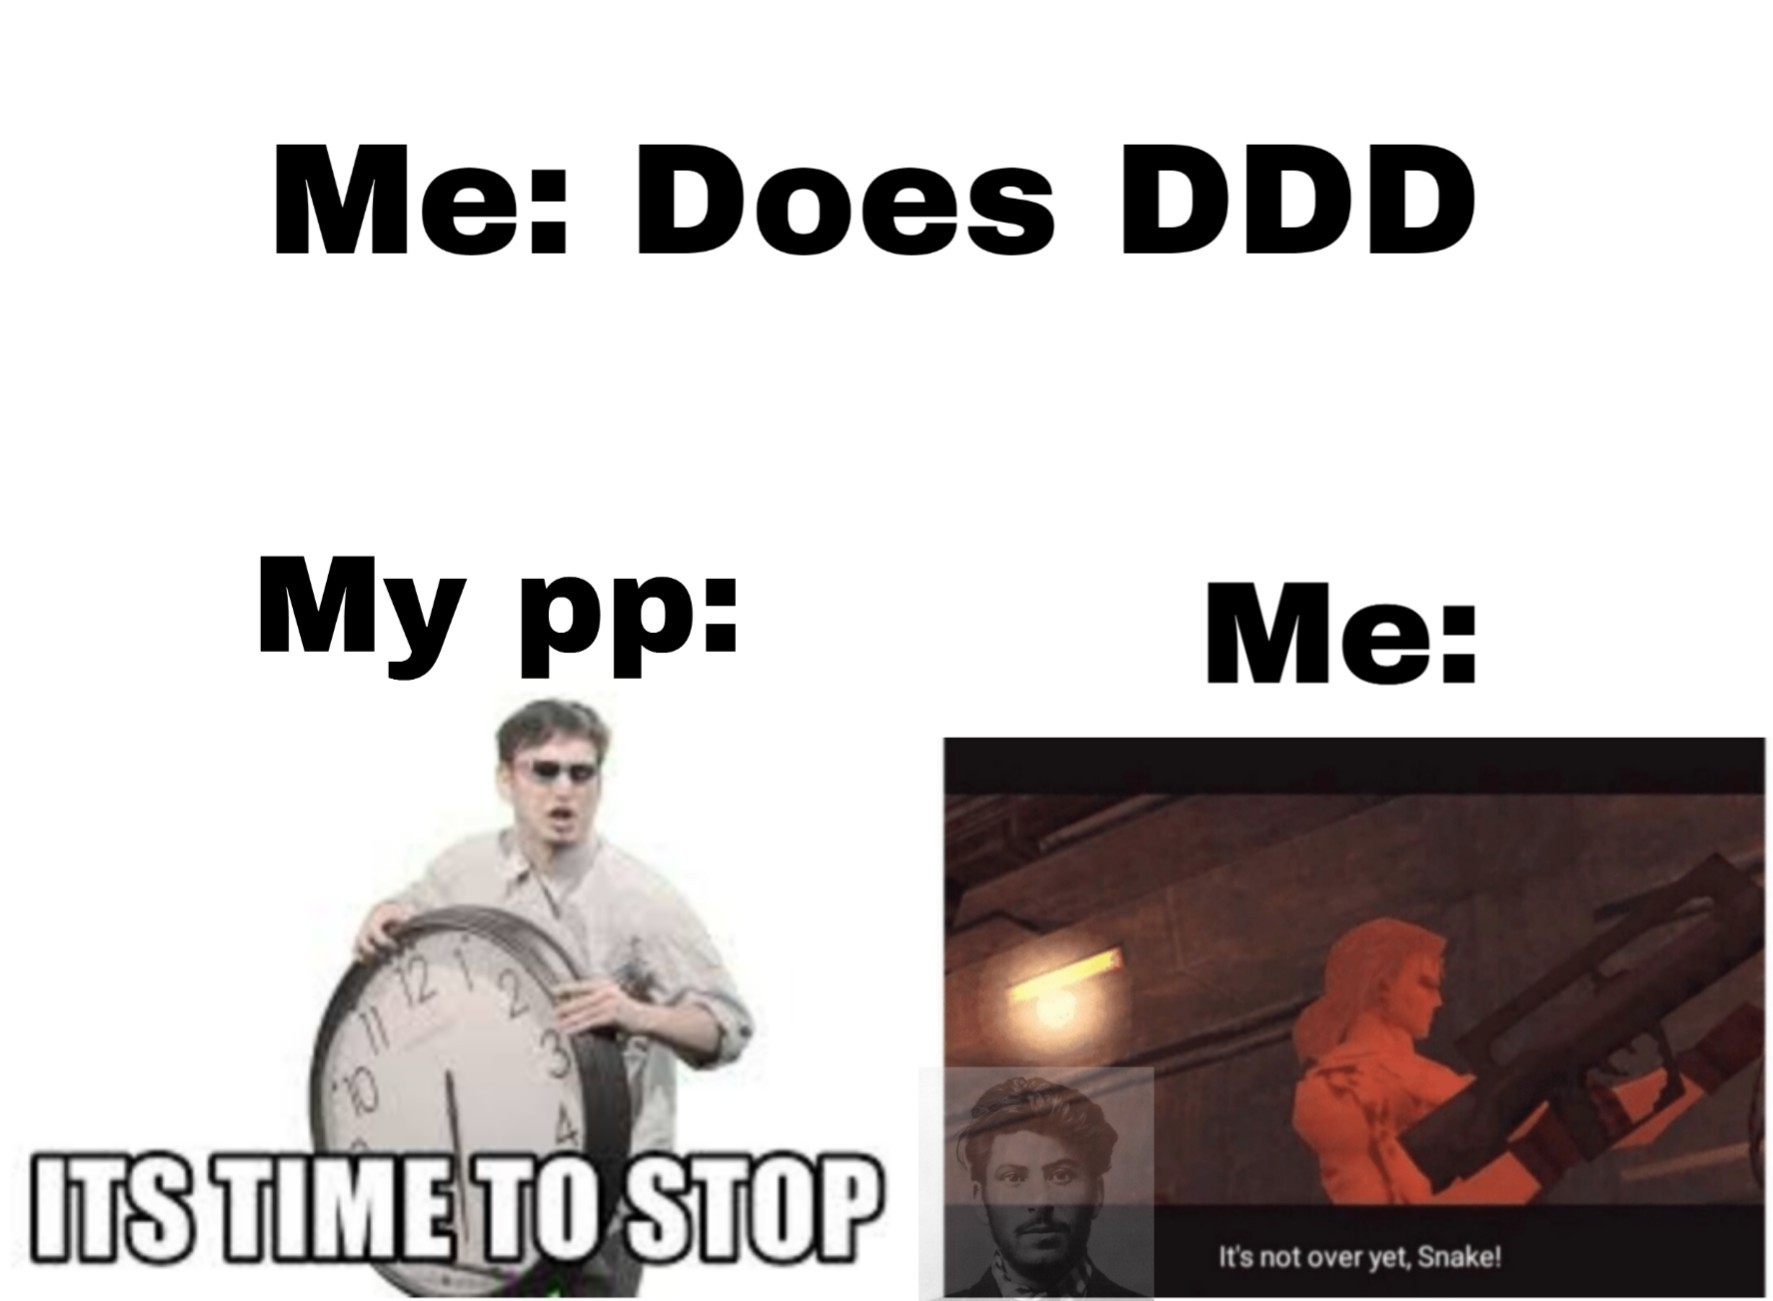 DDD=Destroy your Dick December - meme